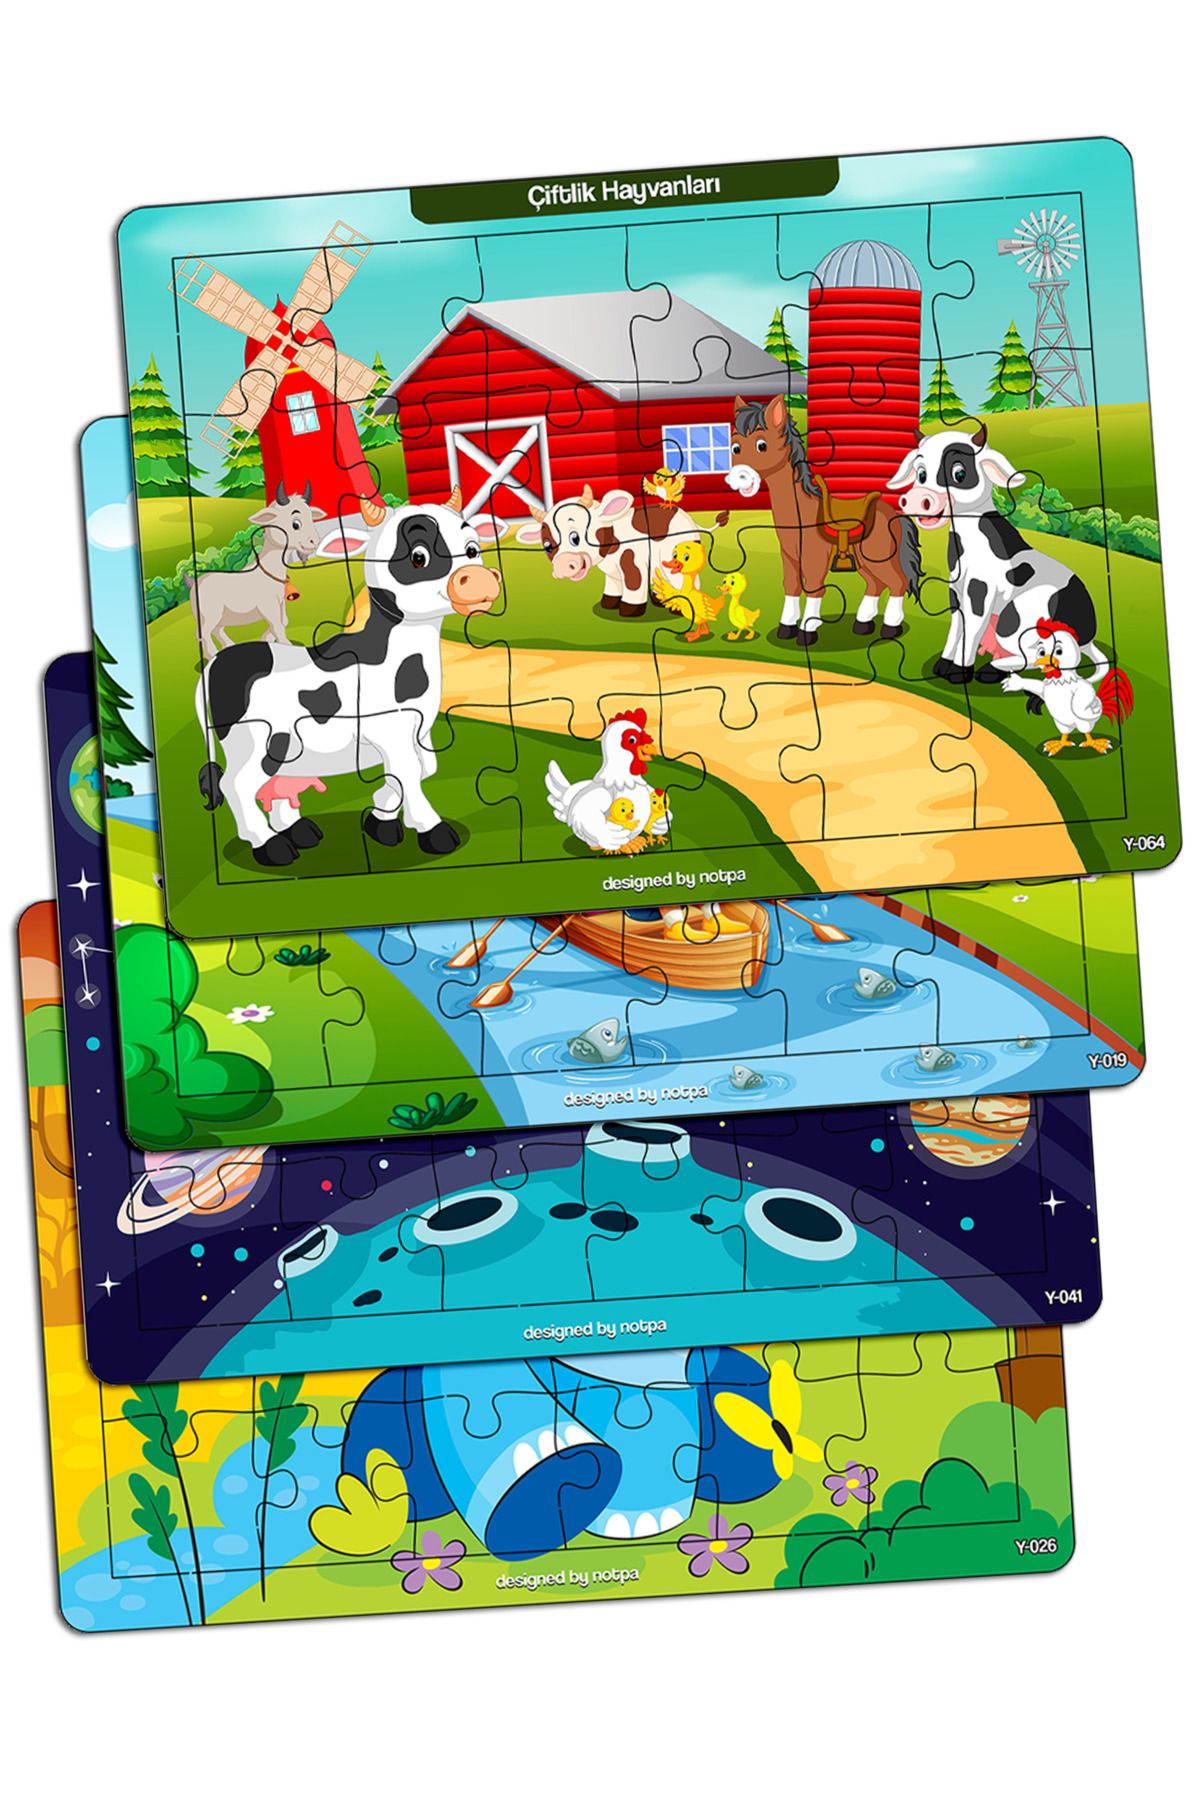 kutuTR Notpa Çocuklar Için Eğitici Ve Öğretici Ahşap 24 Parça Renkli Puzzle 4lü Set 5